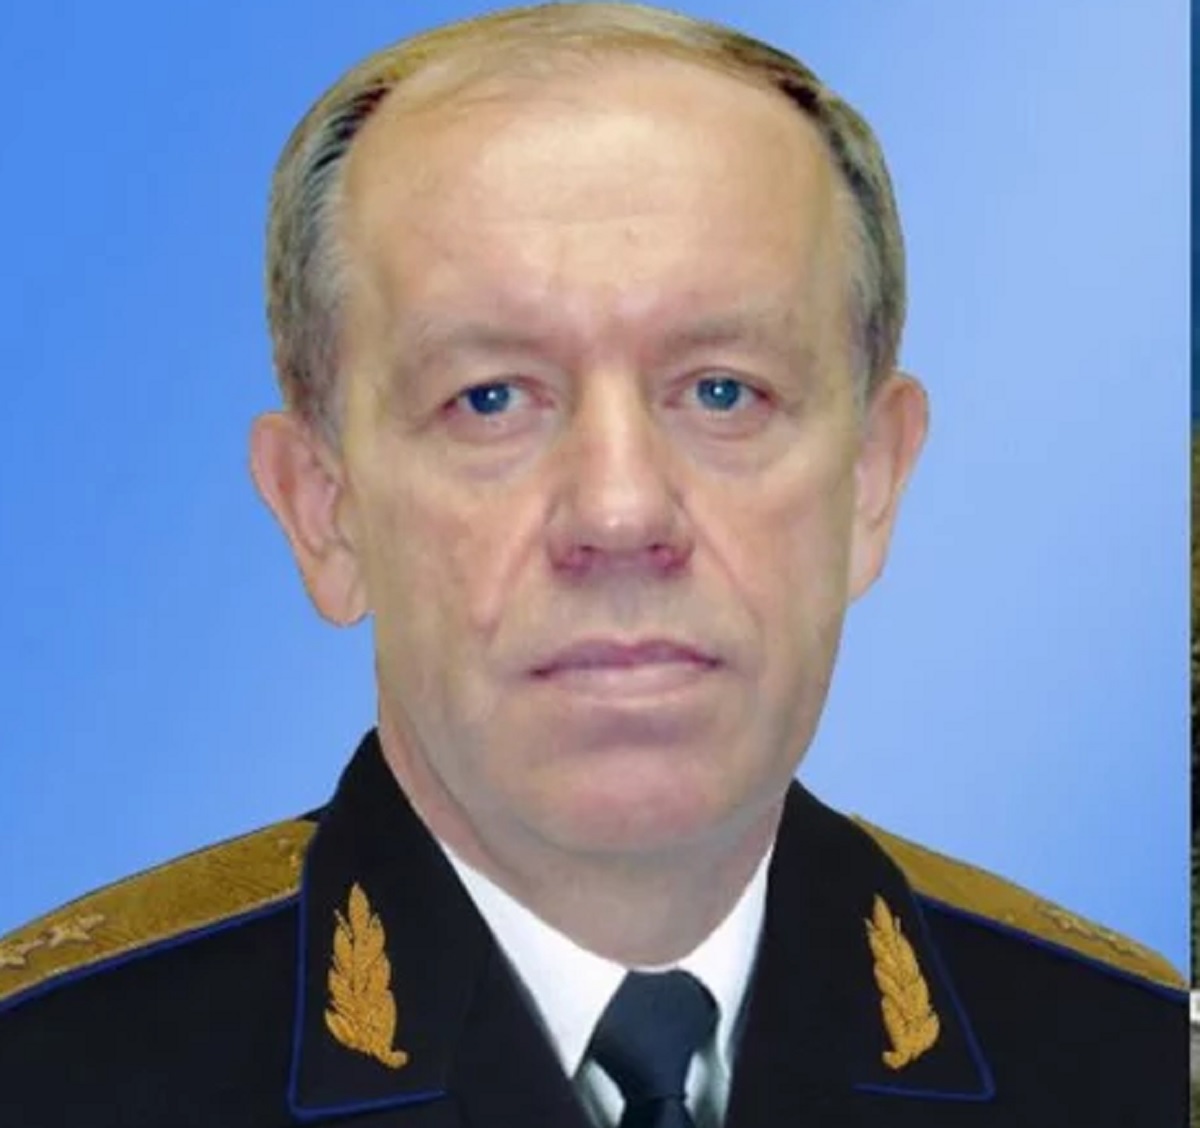 Ρωσία: Πέπλο μυστηρίου καλύπτει το θάνατο φυλακισμένου στρατηγού, που γνώριζε τα μυστικά του παλατιού του Πούτιν